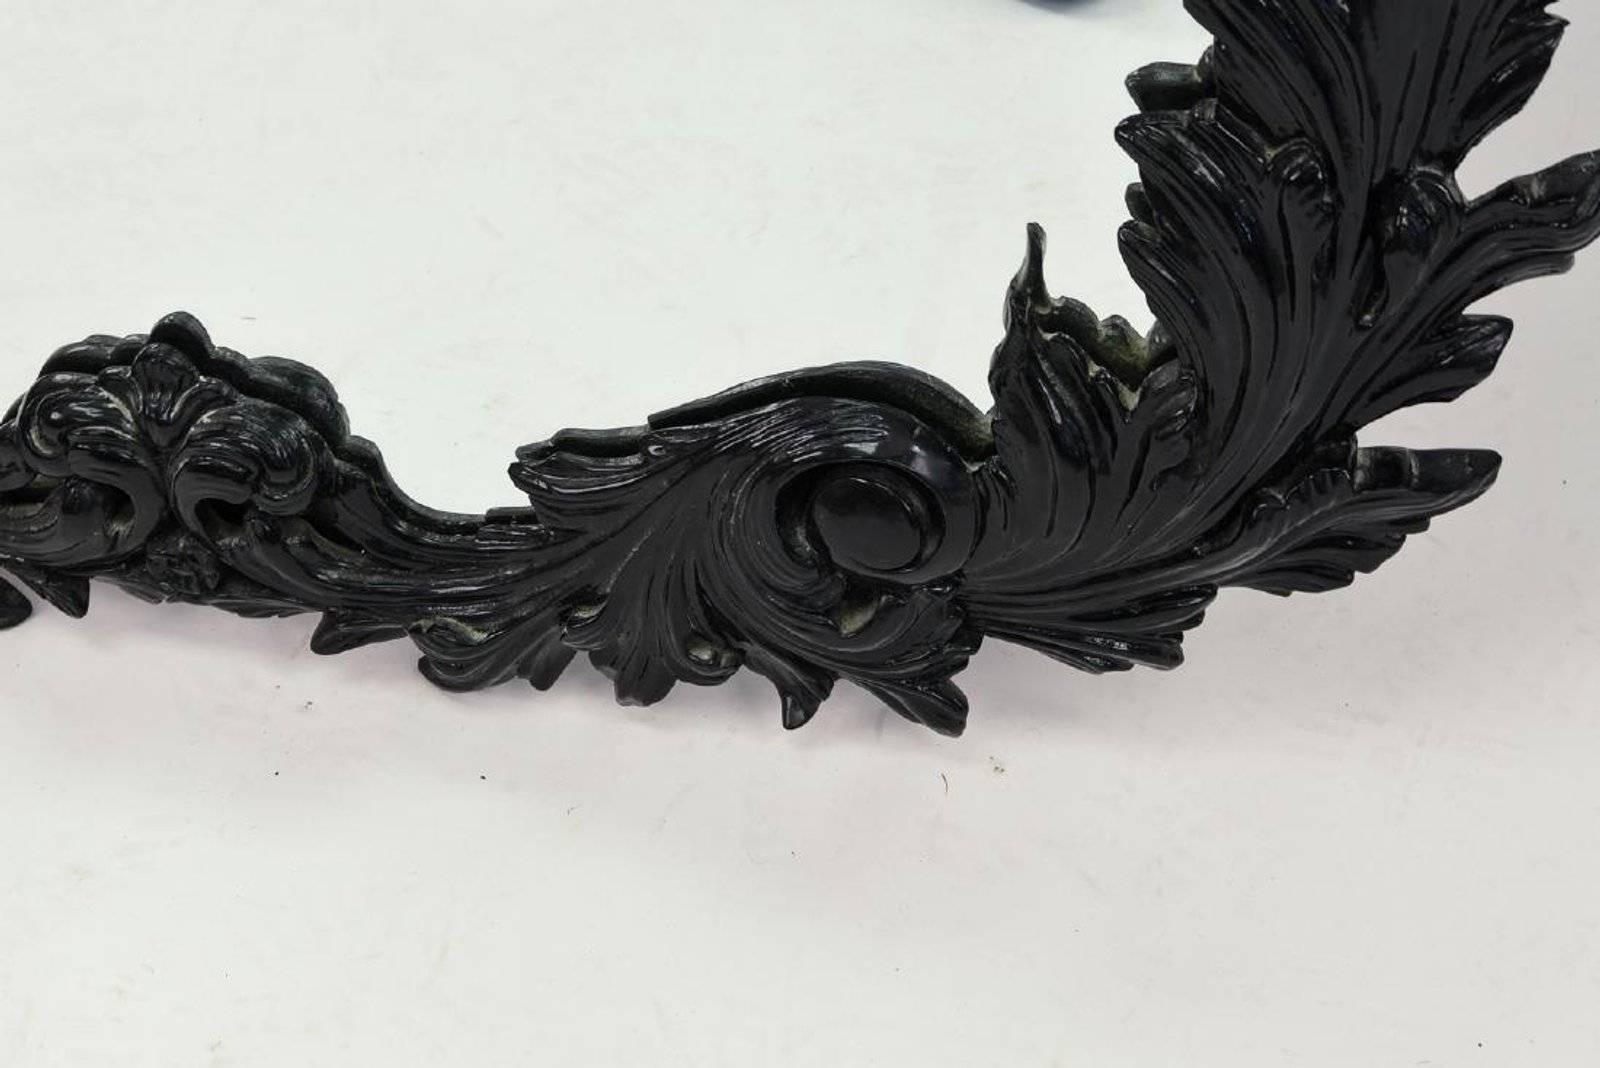 Atemberaubender hochglänzend schwarz lackierter Wandspiegel im Rokoko-Stil. Aus geschnitztem Holz gefertigt und mit vorhandenen Beschlägen aufhängefertig.
Suchbegriffe:  Spiegel im Hollywood-Regency-Stil.